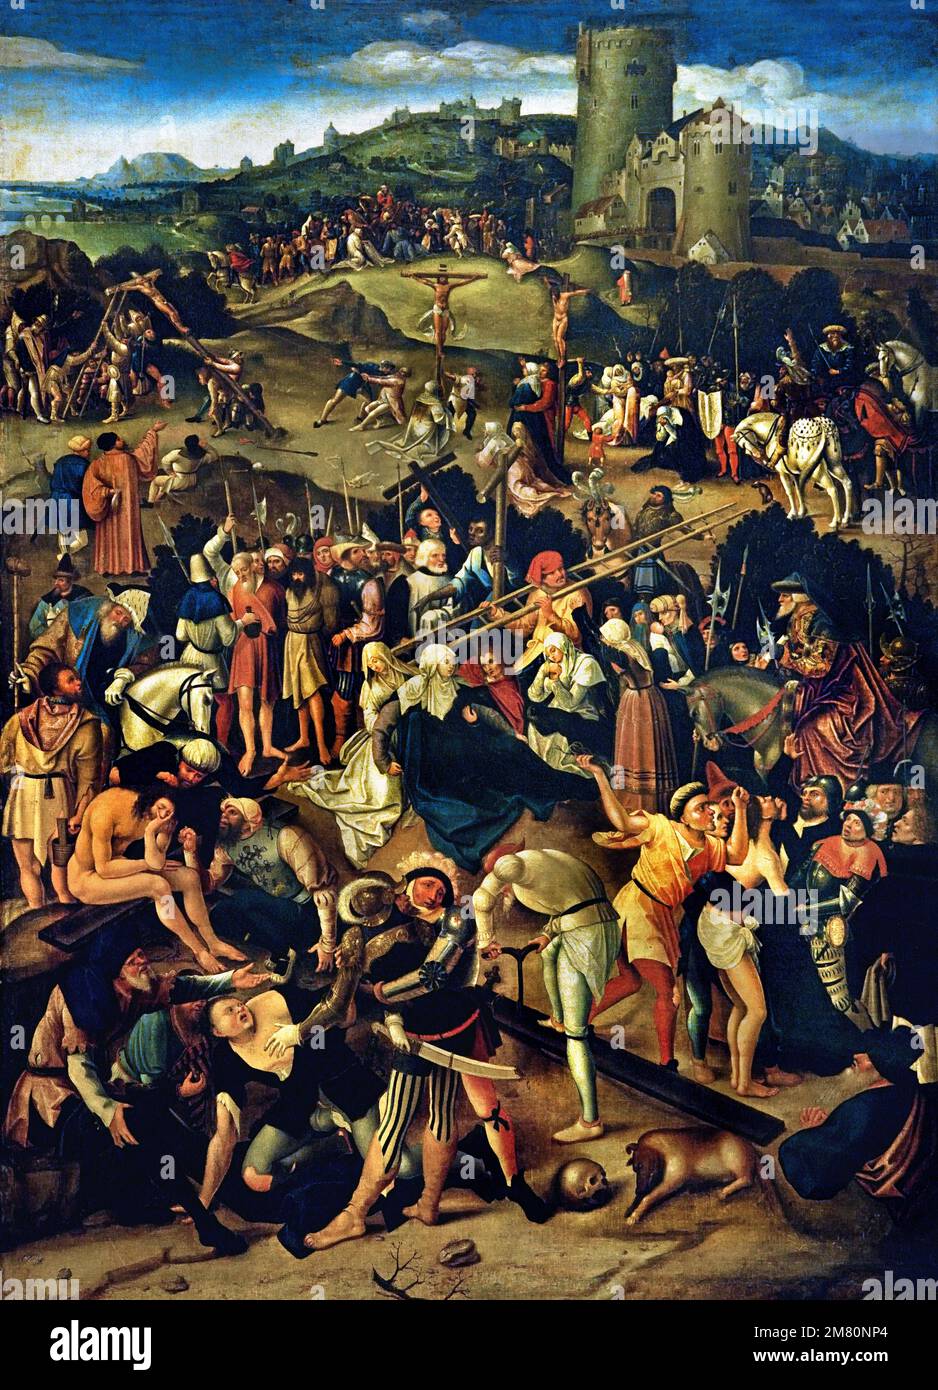 SZENEN AUS DER LEIDENSCHAFT VON CHRISTUS 1530 - 1540 Unbekannte Autorenschule von Cornelis Engebrechtsz. 1468–1533 war ein früherer niederländischer Maler in den Niederlanden Stockfoto